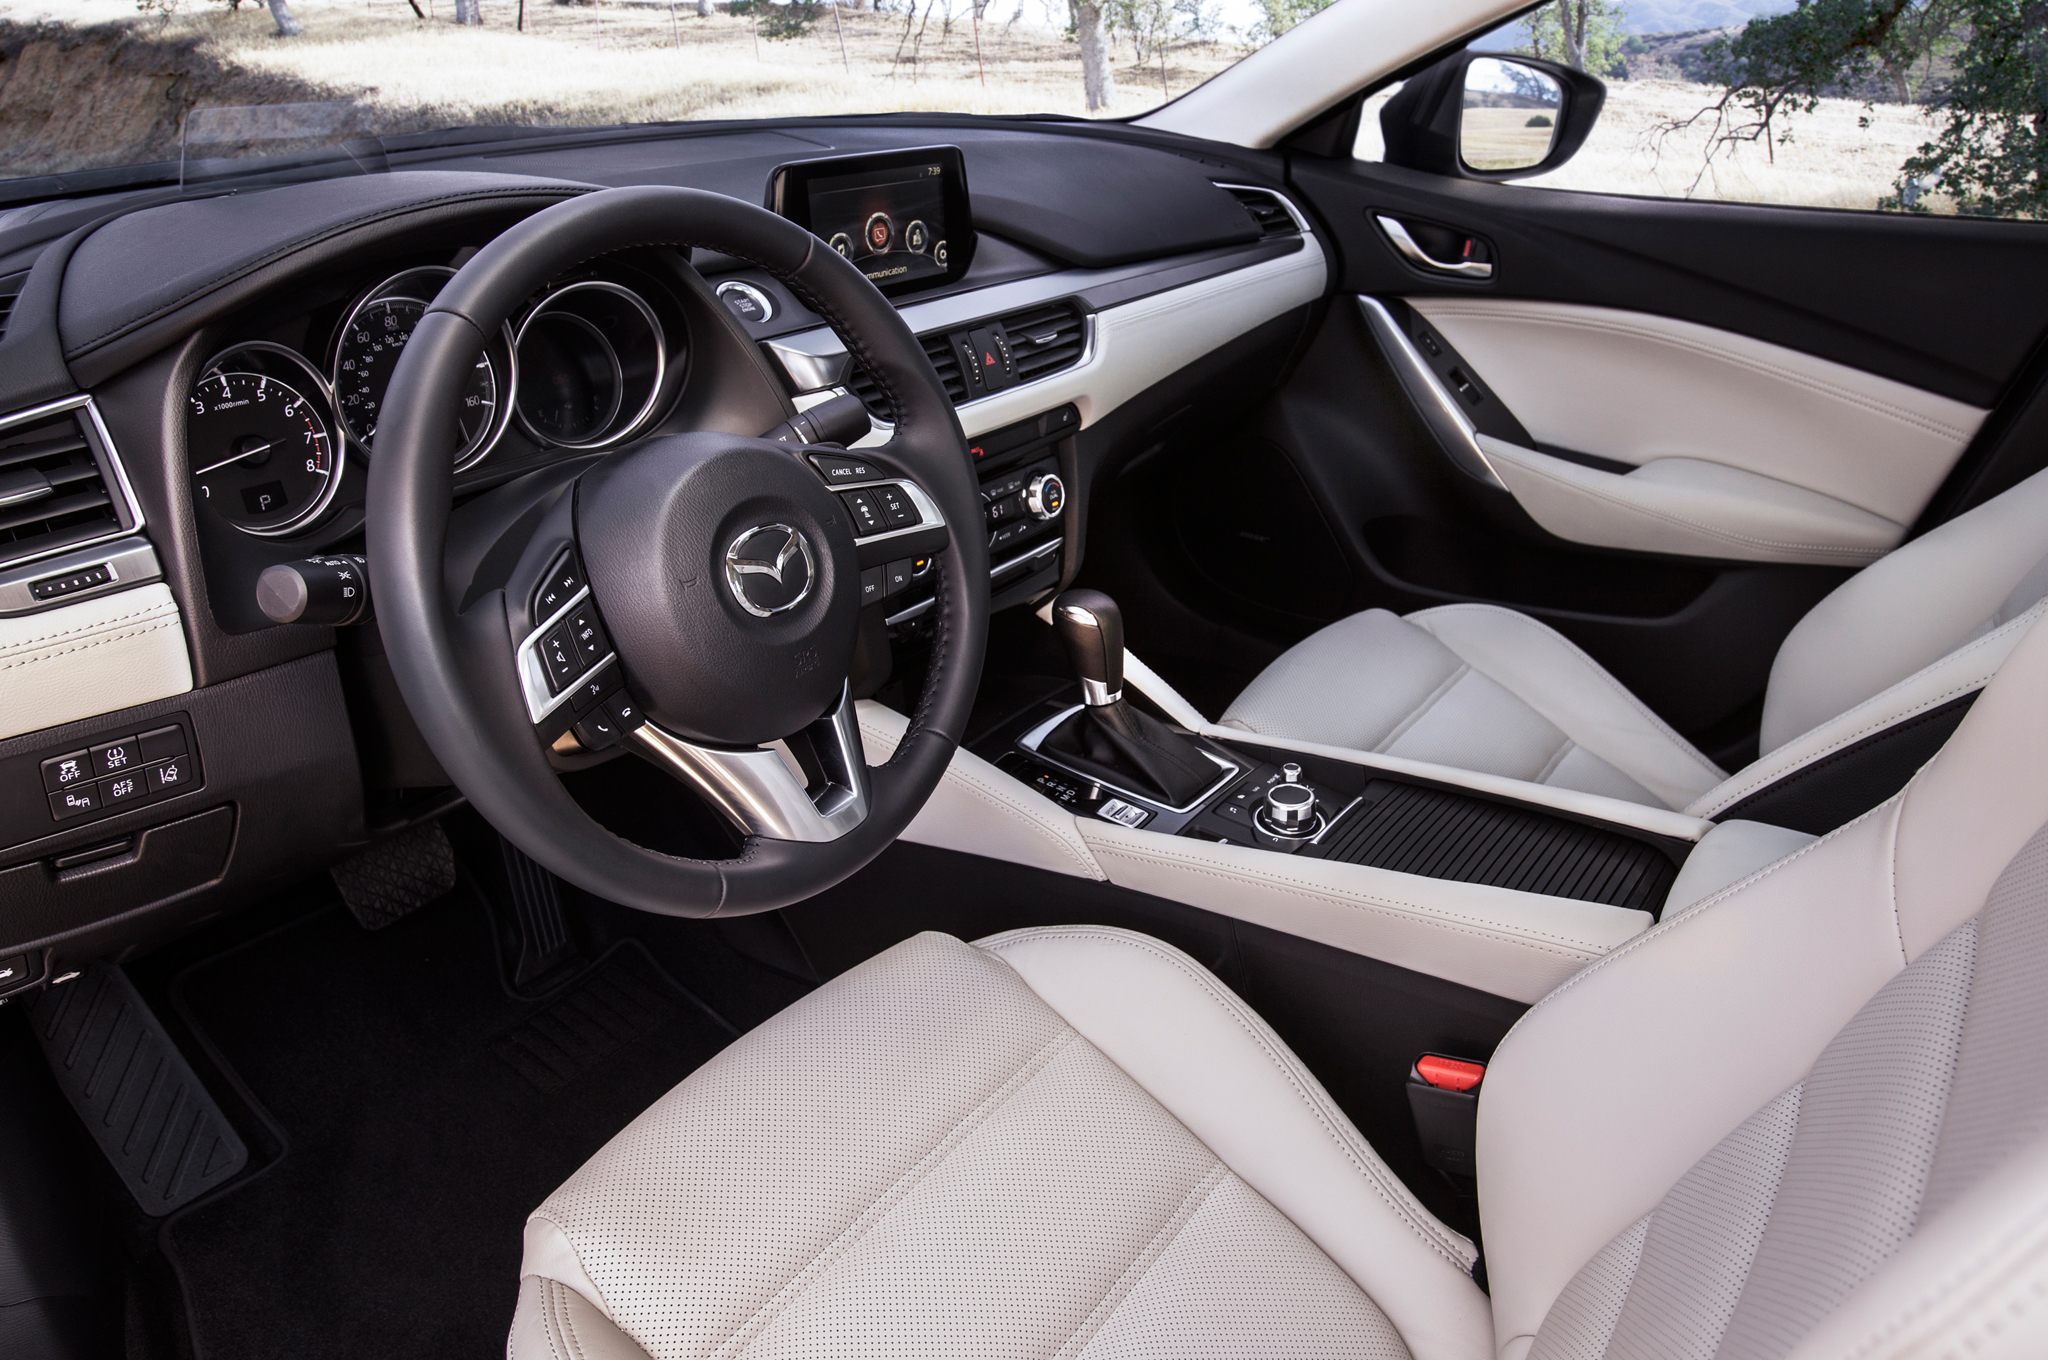 2016-Mazda6-interior-view1